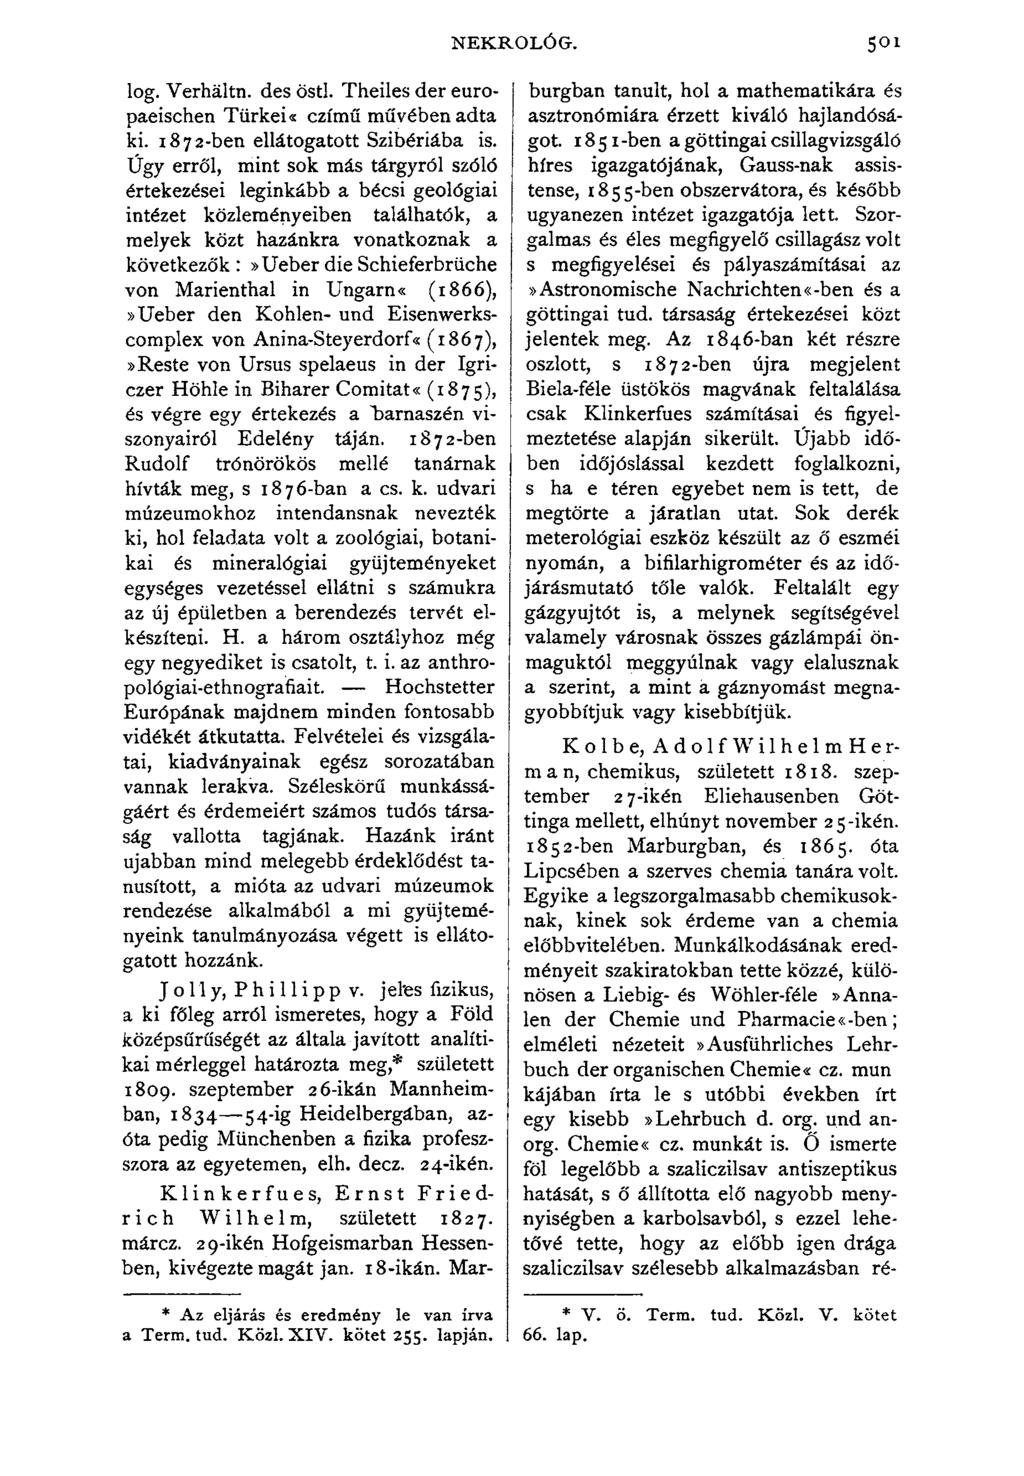 NEKROLÓG. lóg. Verháltn. des östl. Theiles dér europaeischen Türkei«czímű művében adta ki. 1872-ben ellátogatott Szibériába is.